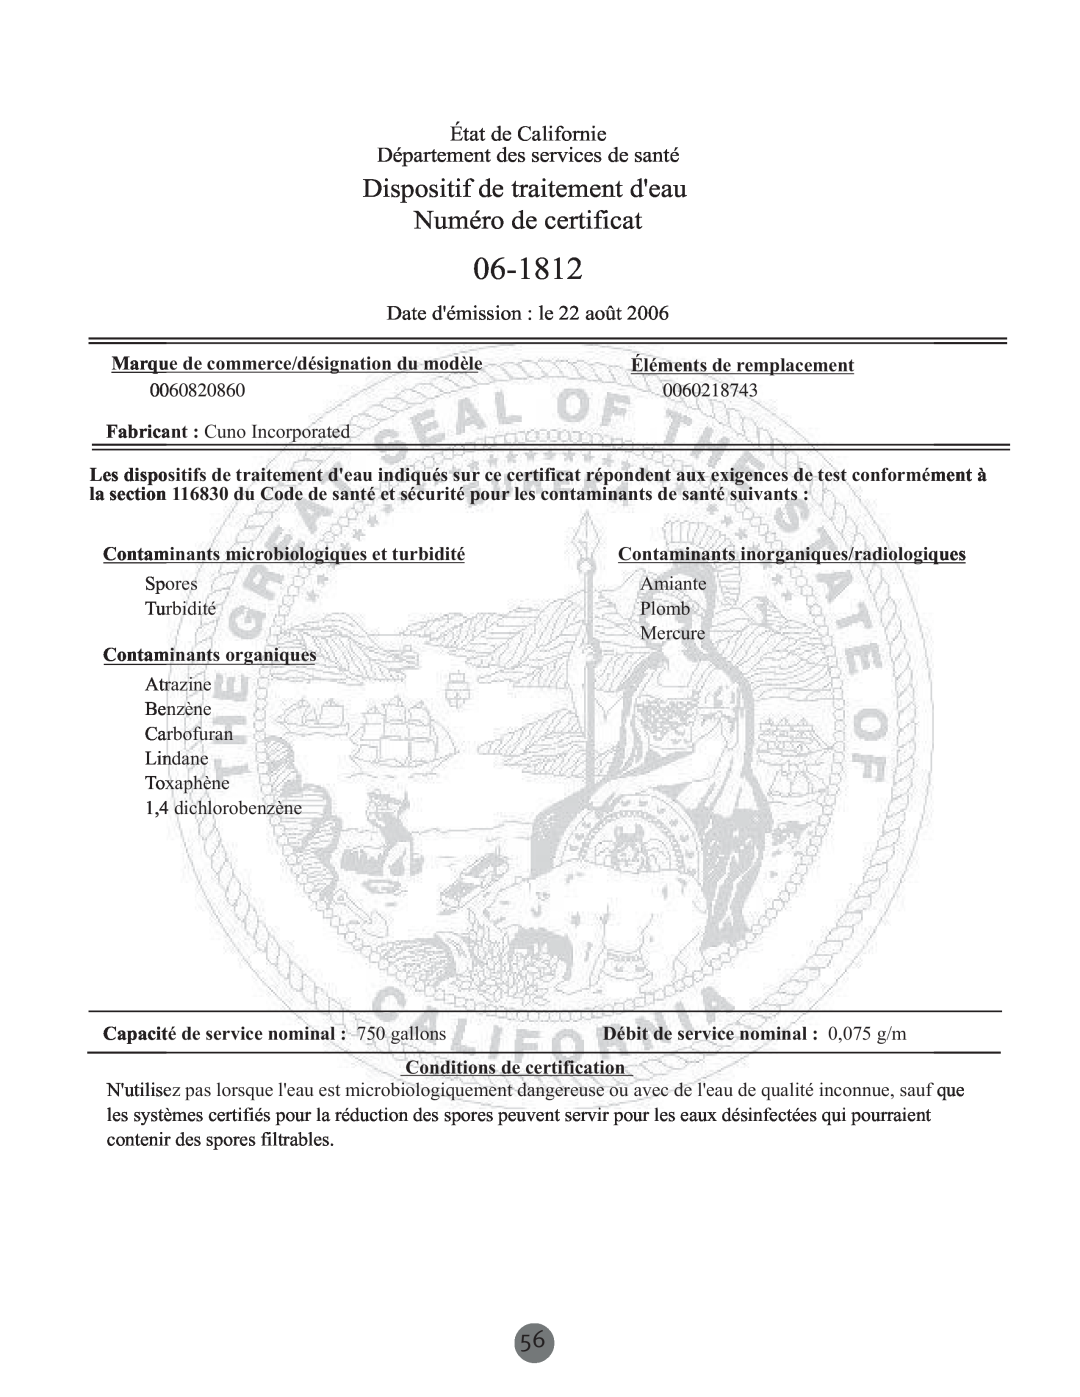 Haier PRCS25 Dispositif de traitement deau Numéro de certificat, État de Californie Département des services de santé 